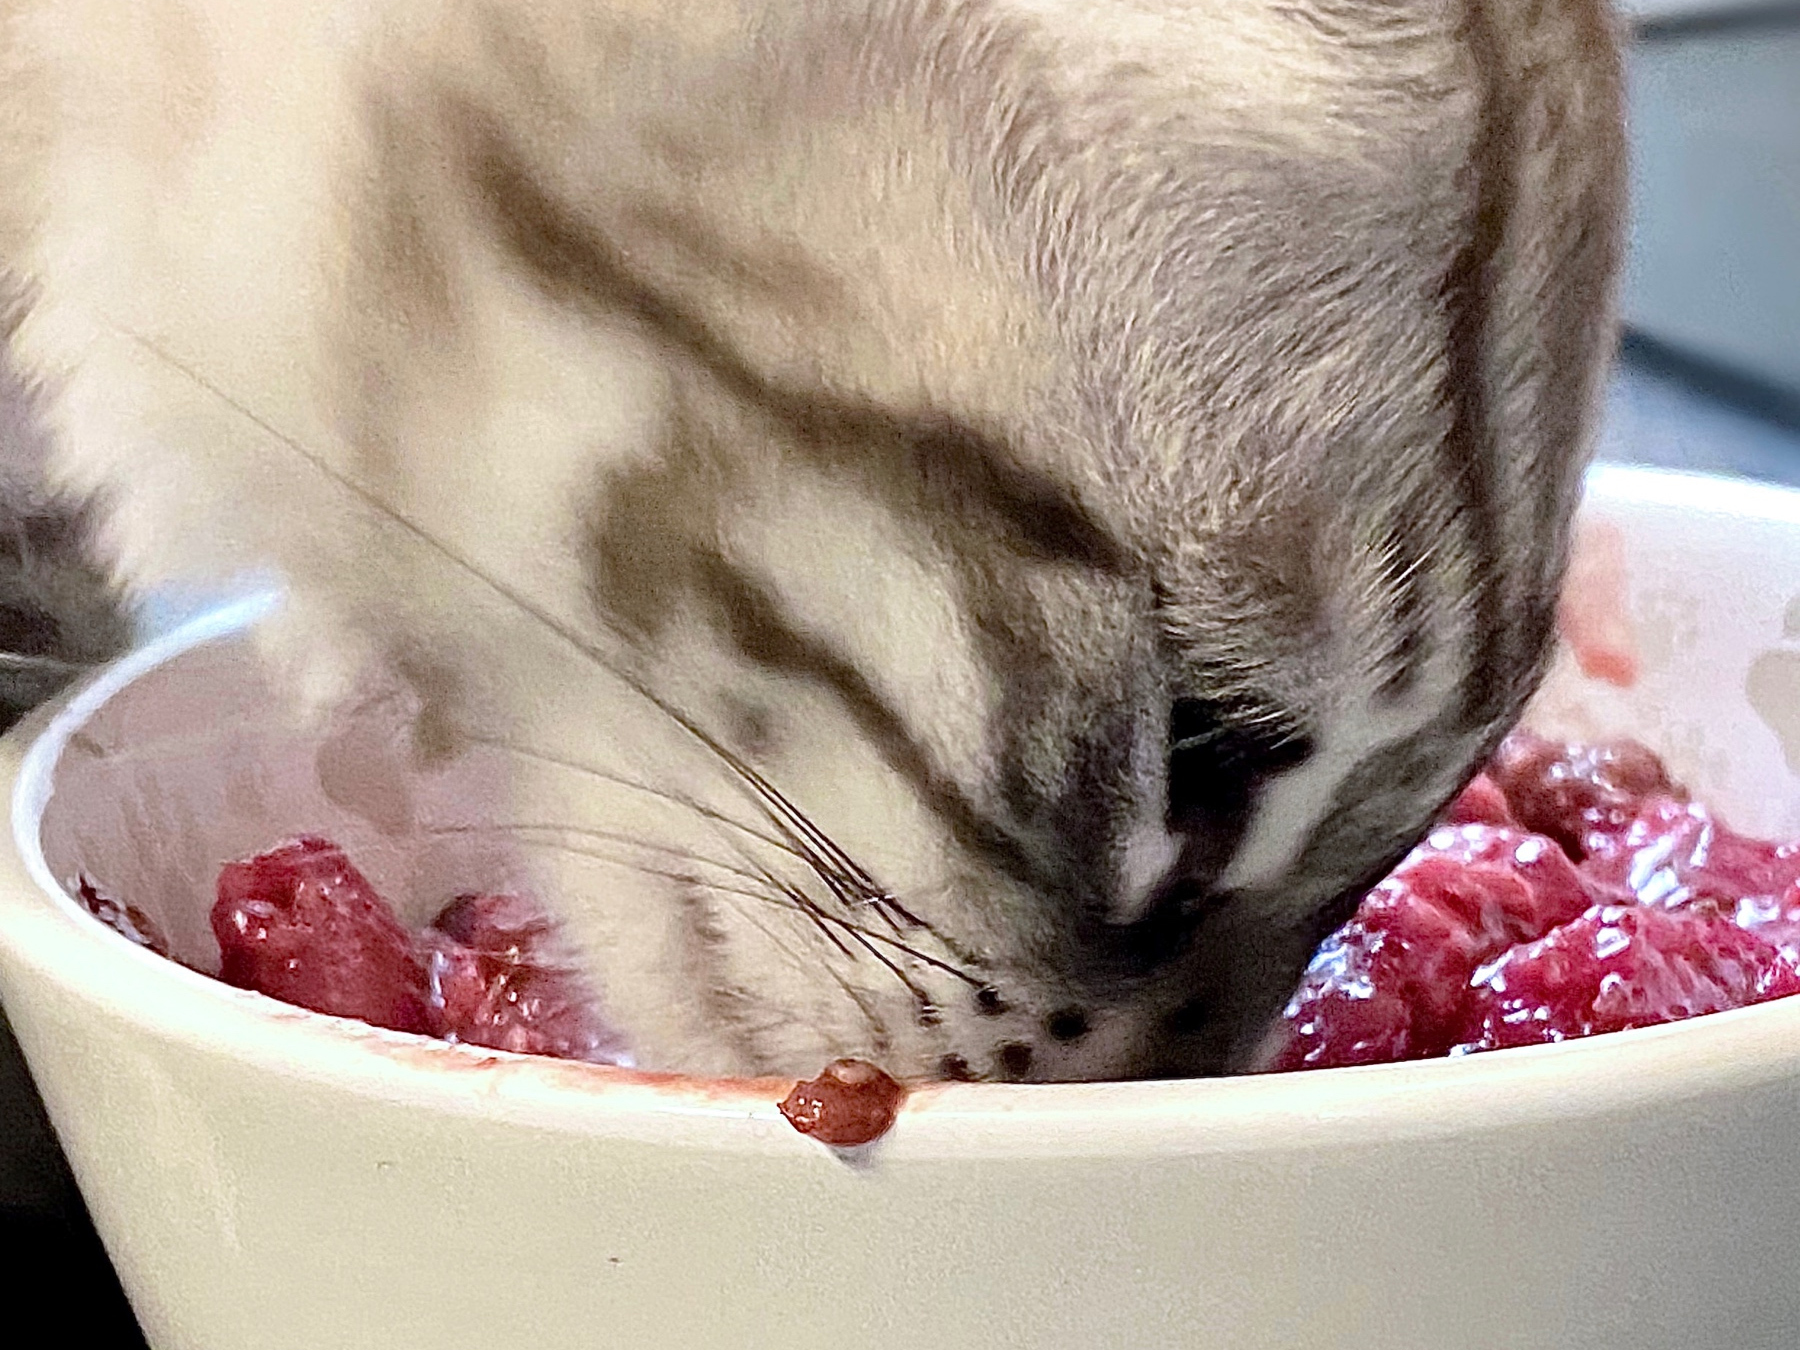 Katze beim Fressen